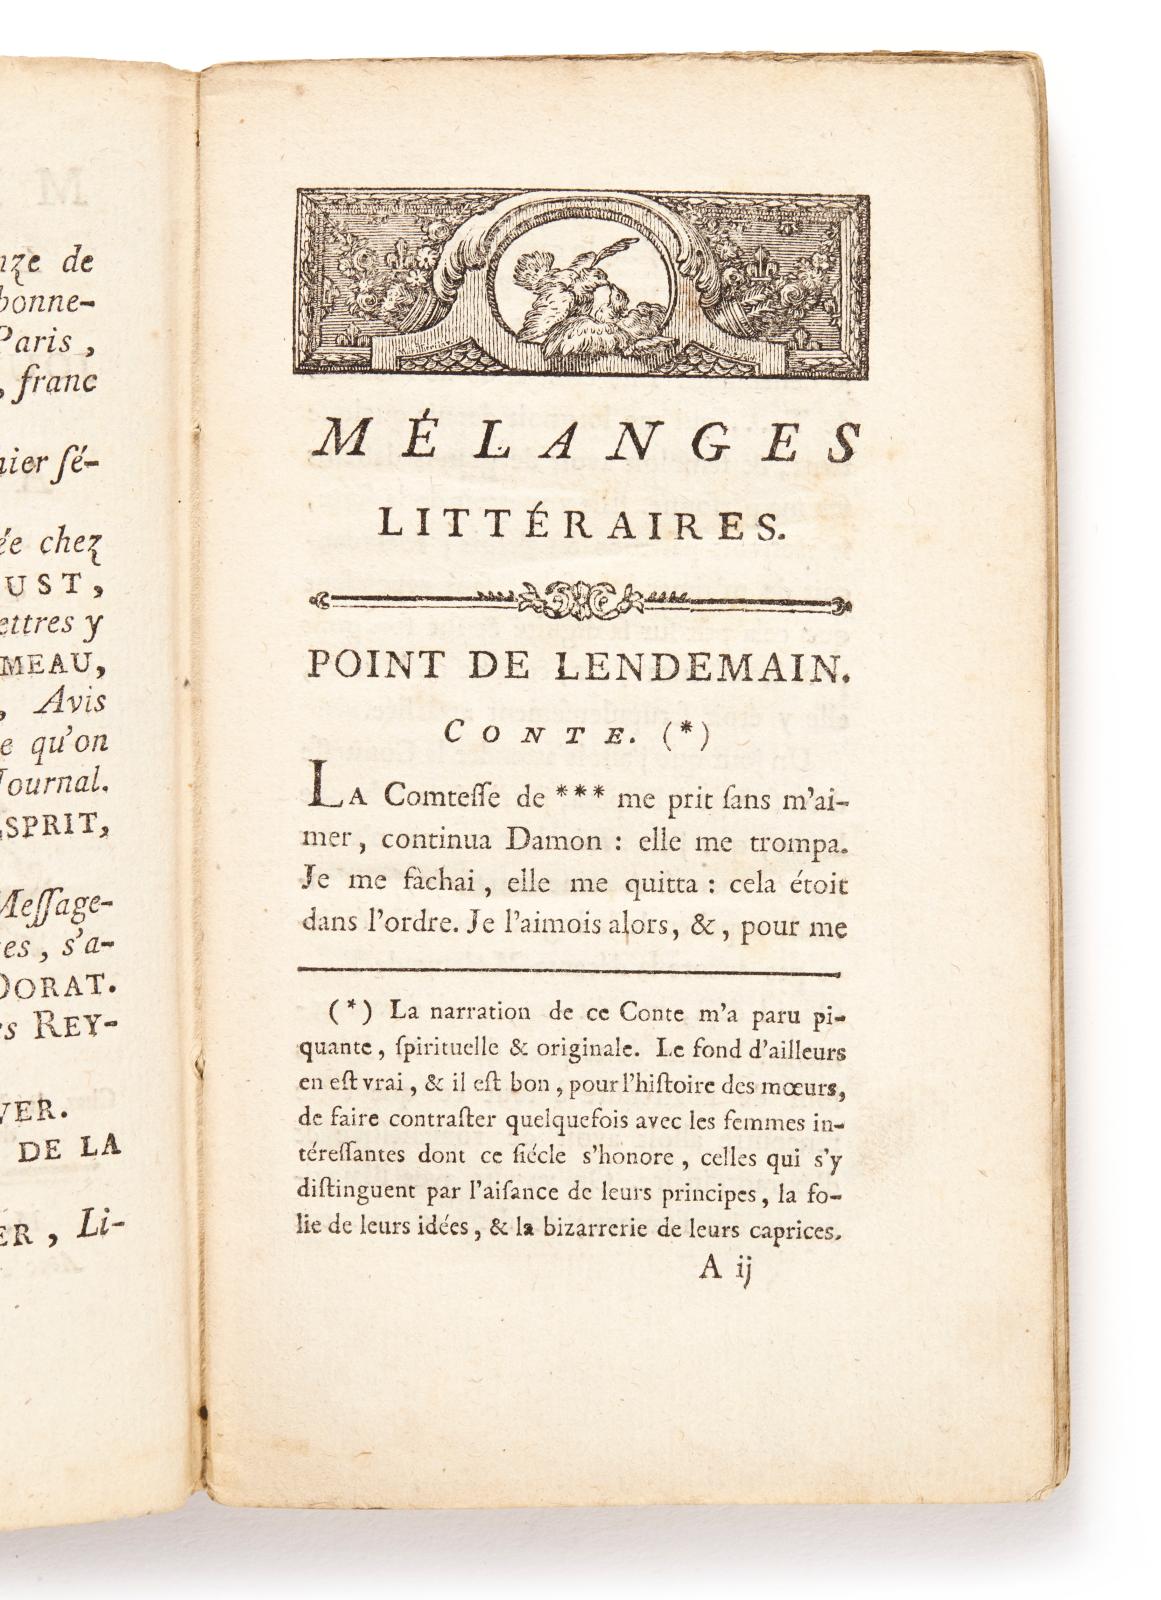 Dominique Vivant Denon (1747-1825), Point de lendemain, conte in Mélanges littéraires ou Journal des dames dédié à la reine, juin 1777, tome II, par M